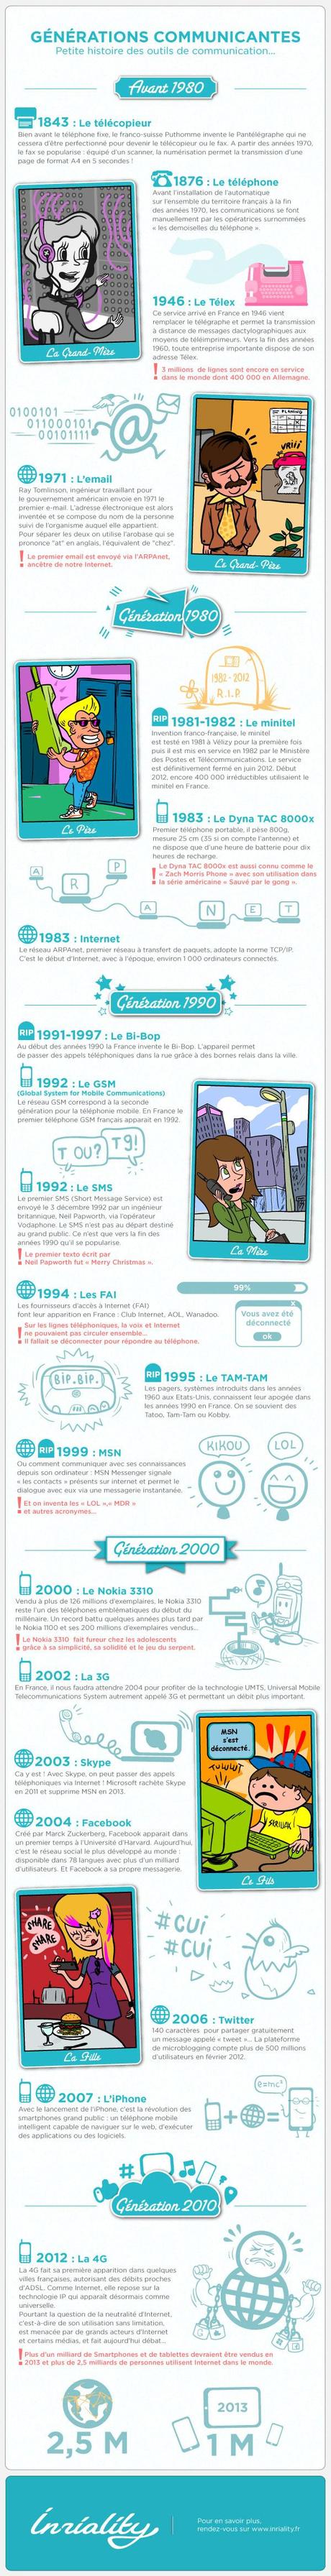 Infographie en français sur l'histoire des outils de communication